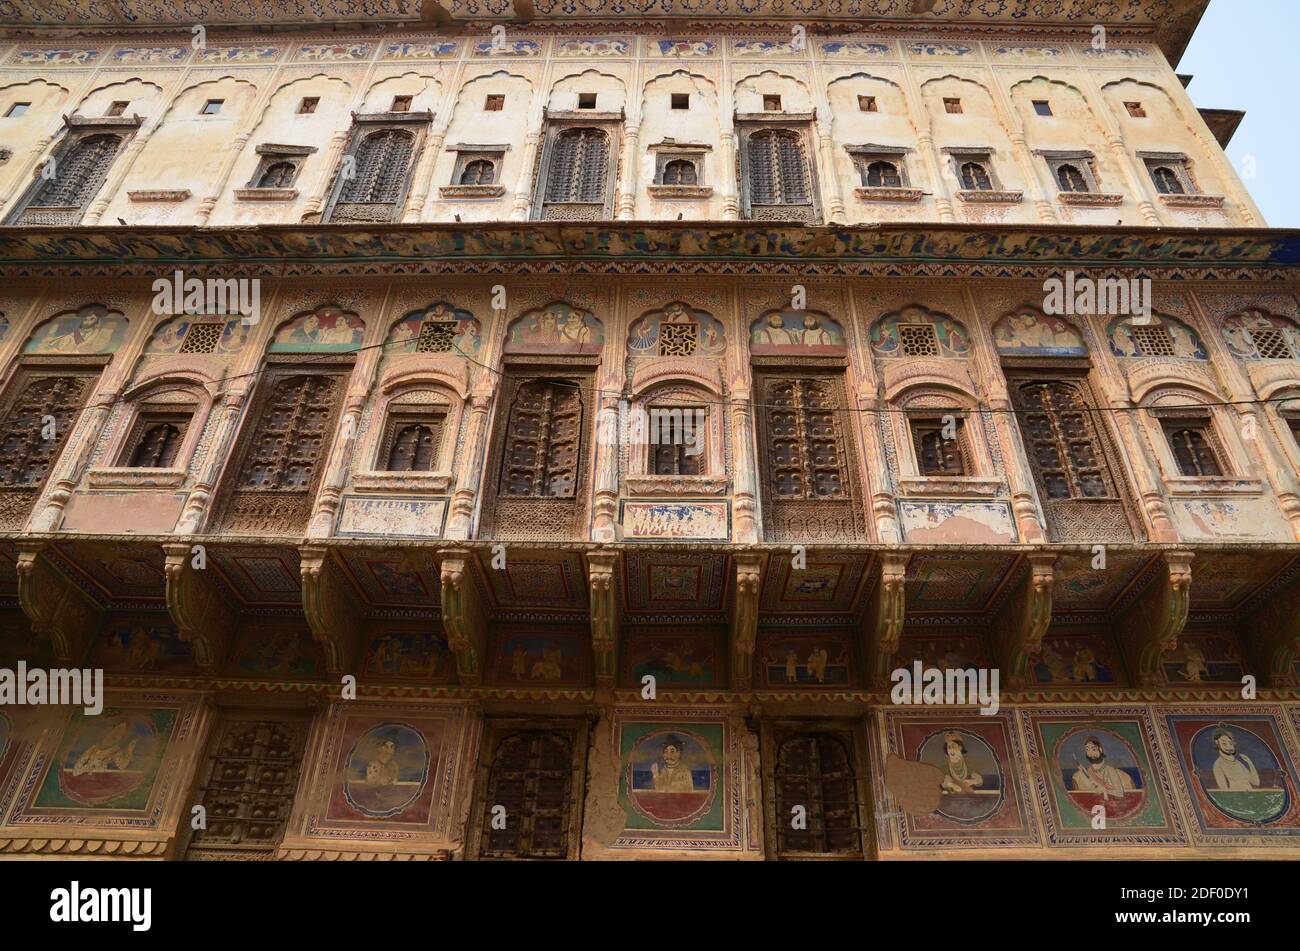 Atemberaubende Architektur abseits der touristischen Pfade: haveli in der Region Shekhawati in Rajasthan, Indien Stockfoto